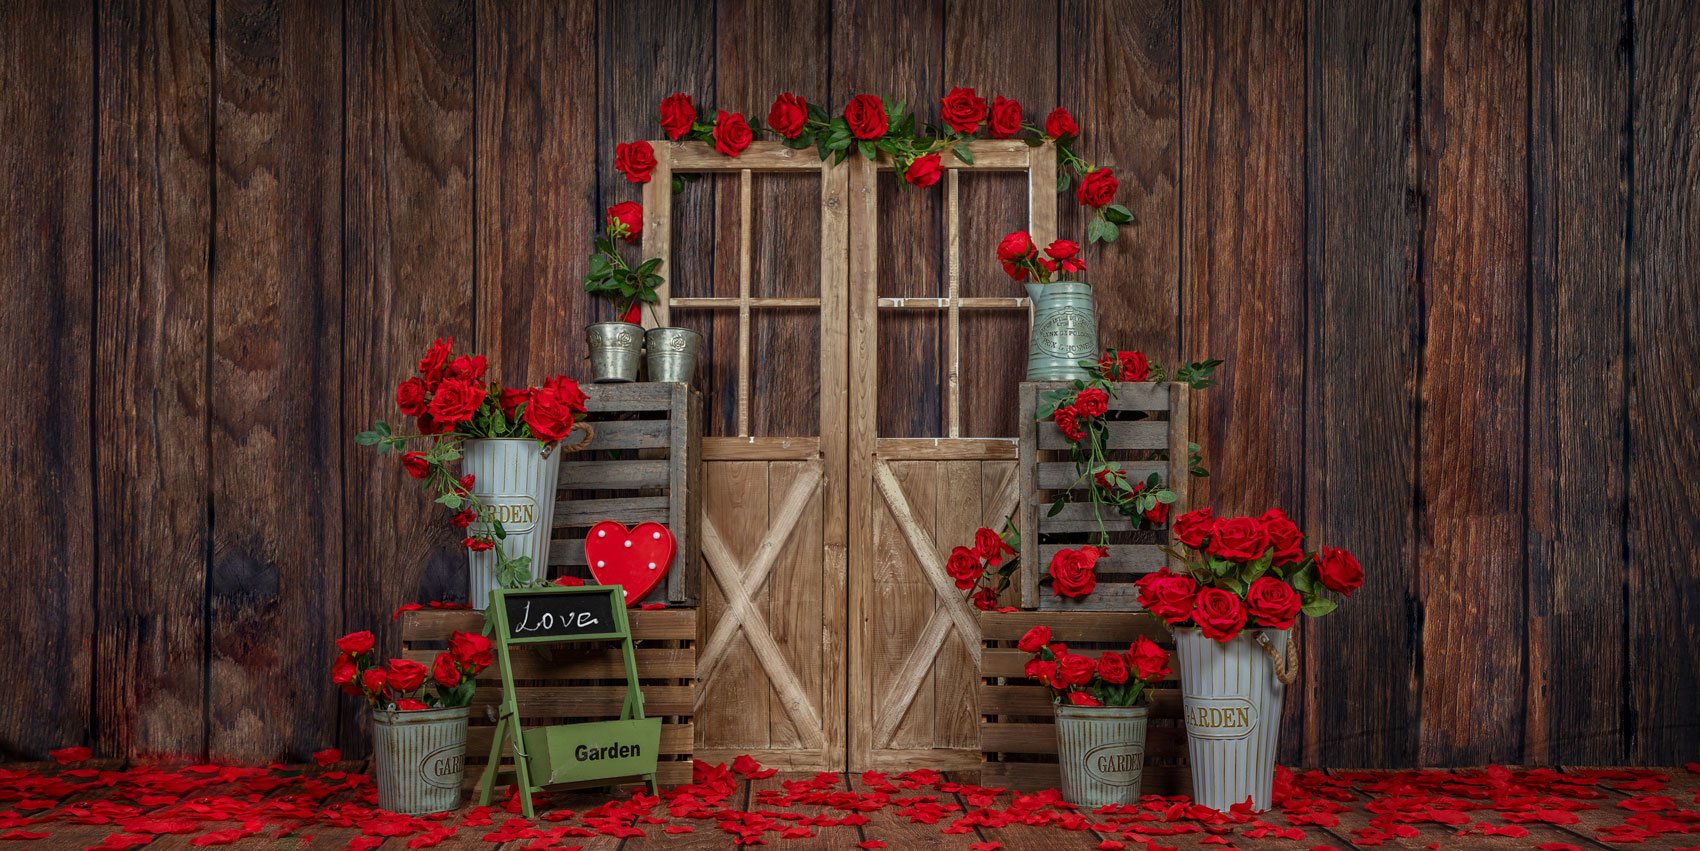 Kate Porte en bois Roses La Saint-Valentin Toile de fond conçue par Emetselch